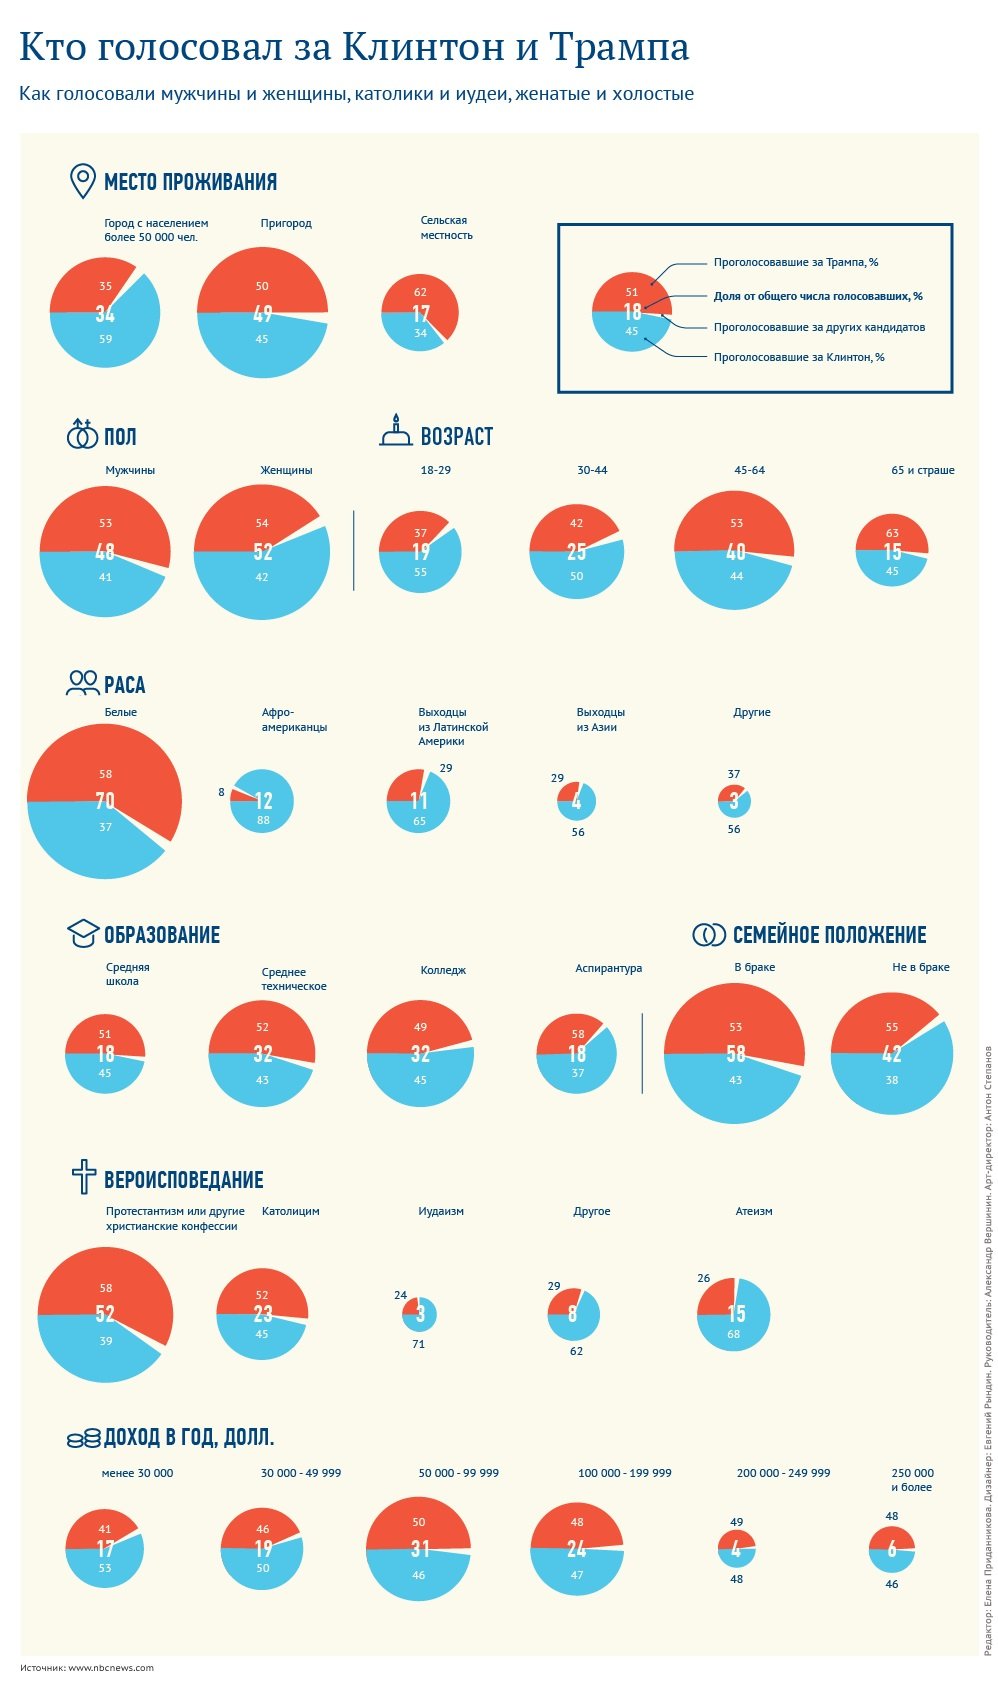 Электоральные предпочтения разных категорий граждан США. Инфографика